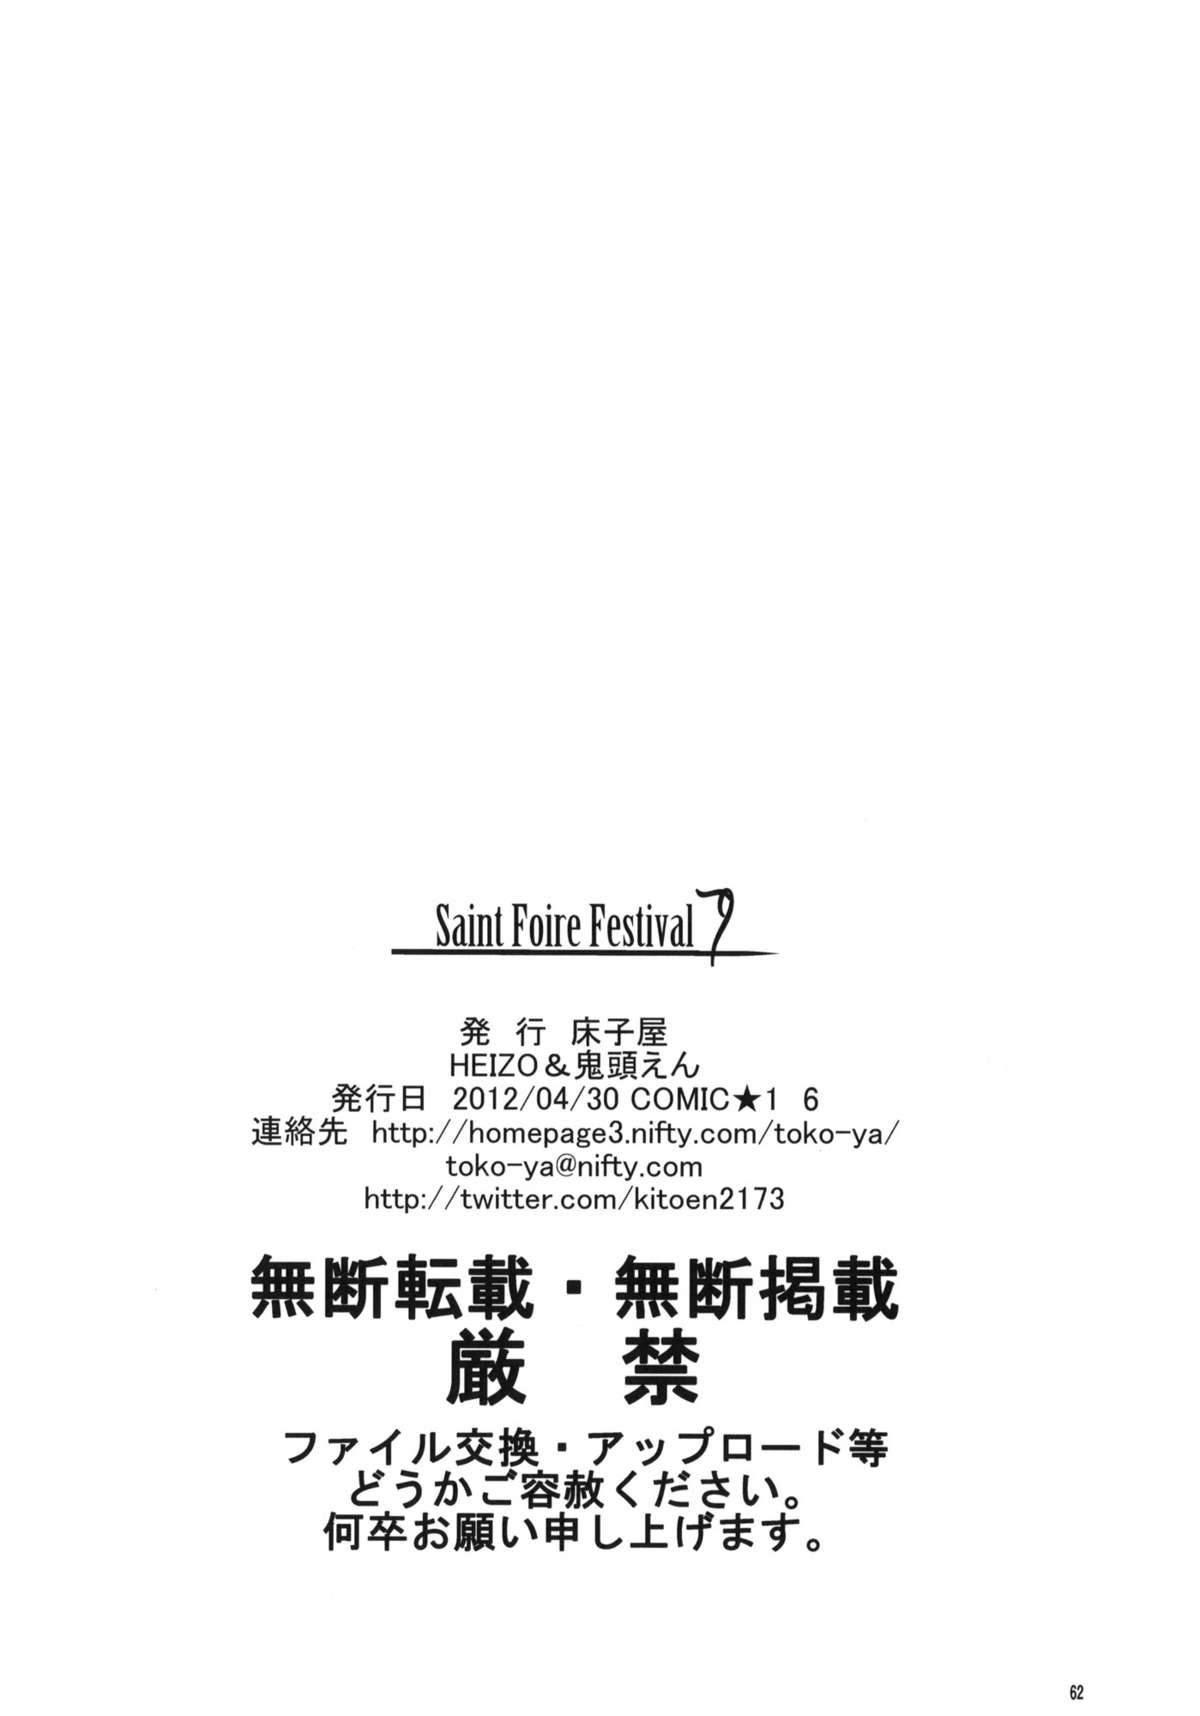 (COMIC1☆6) [床子屋 (HEIZO, 鬼頭えん)] Saint Foire Festival 7 Mabel [英訳]